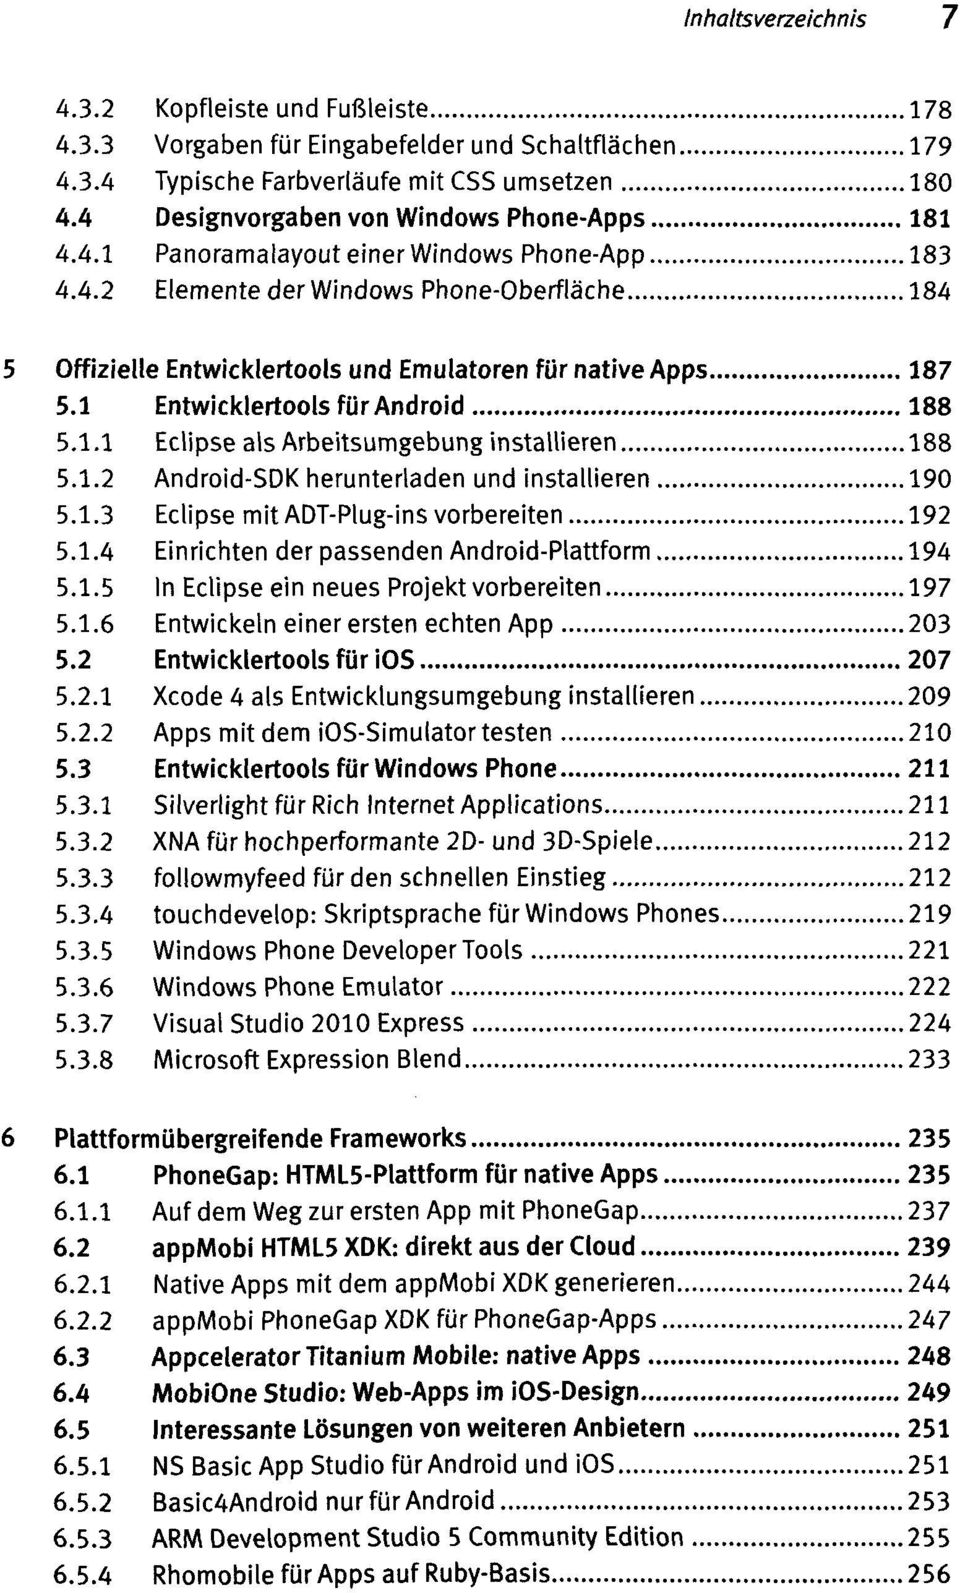 1 Entwicklertools für Android 188 5.1.1 Eclipse als Arbeitsumgebung installieren 188 5.1.2 Android-SDK herunterladen und installieren 190 5.1.3 Eclipse vorbereiten 192 5.1.4 Einrichten der passenden 194 5.